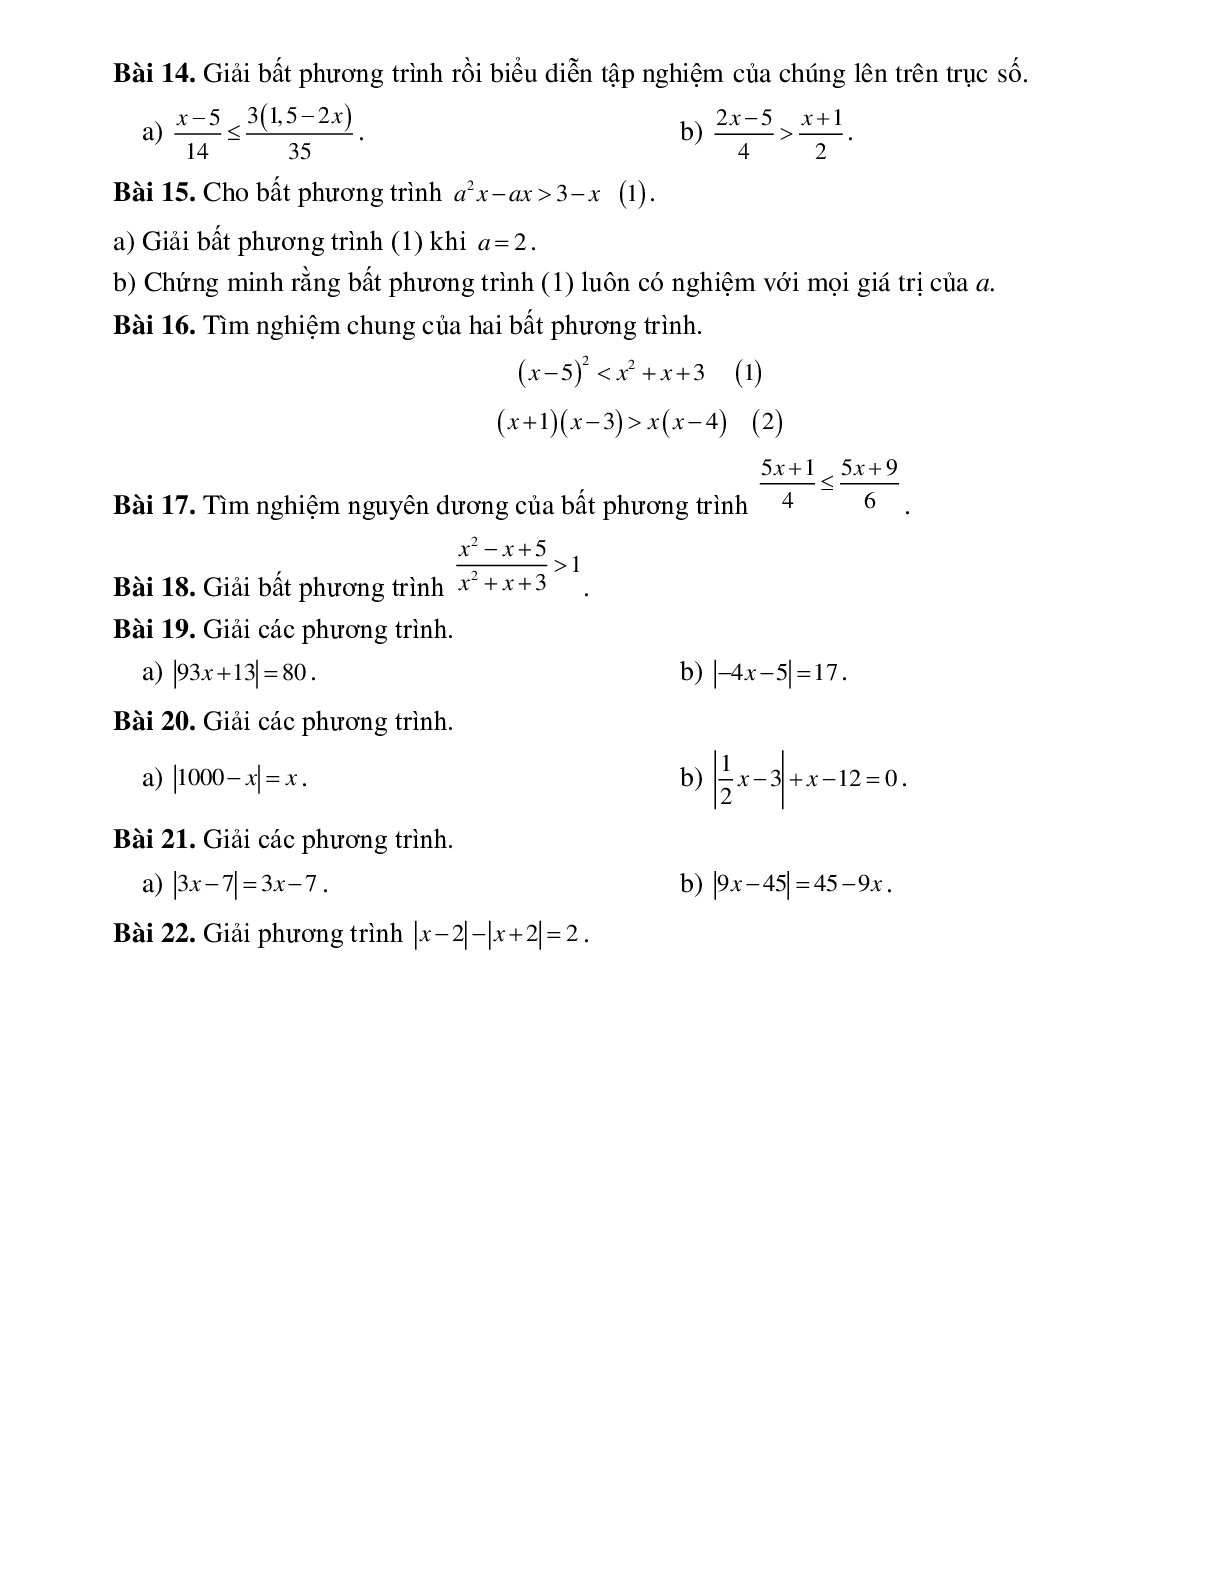 Ôn tập chương IV bất phương trình bậc nhất một ẩn (trang 2)